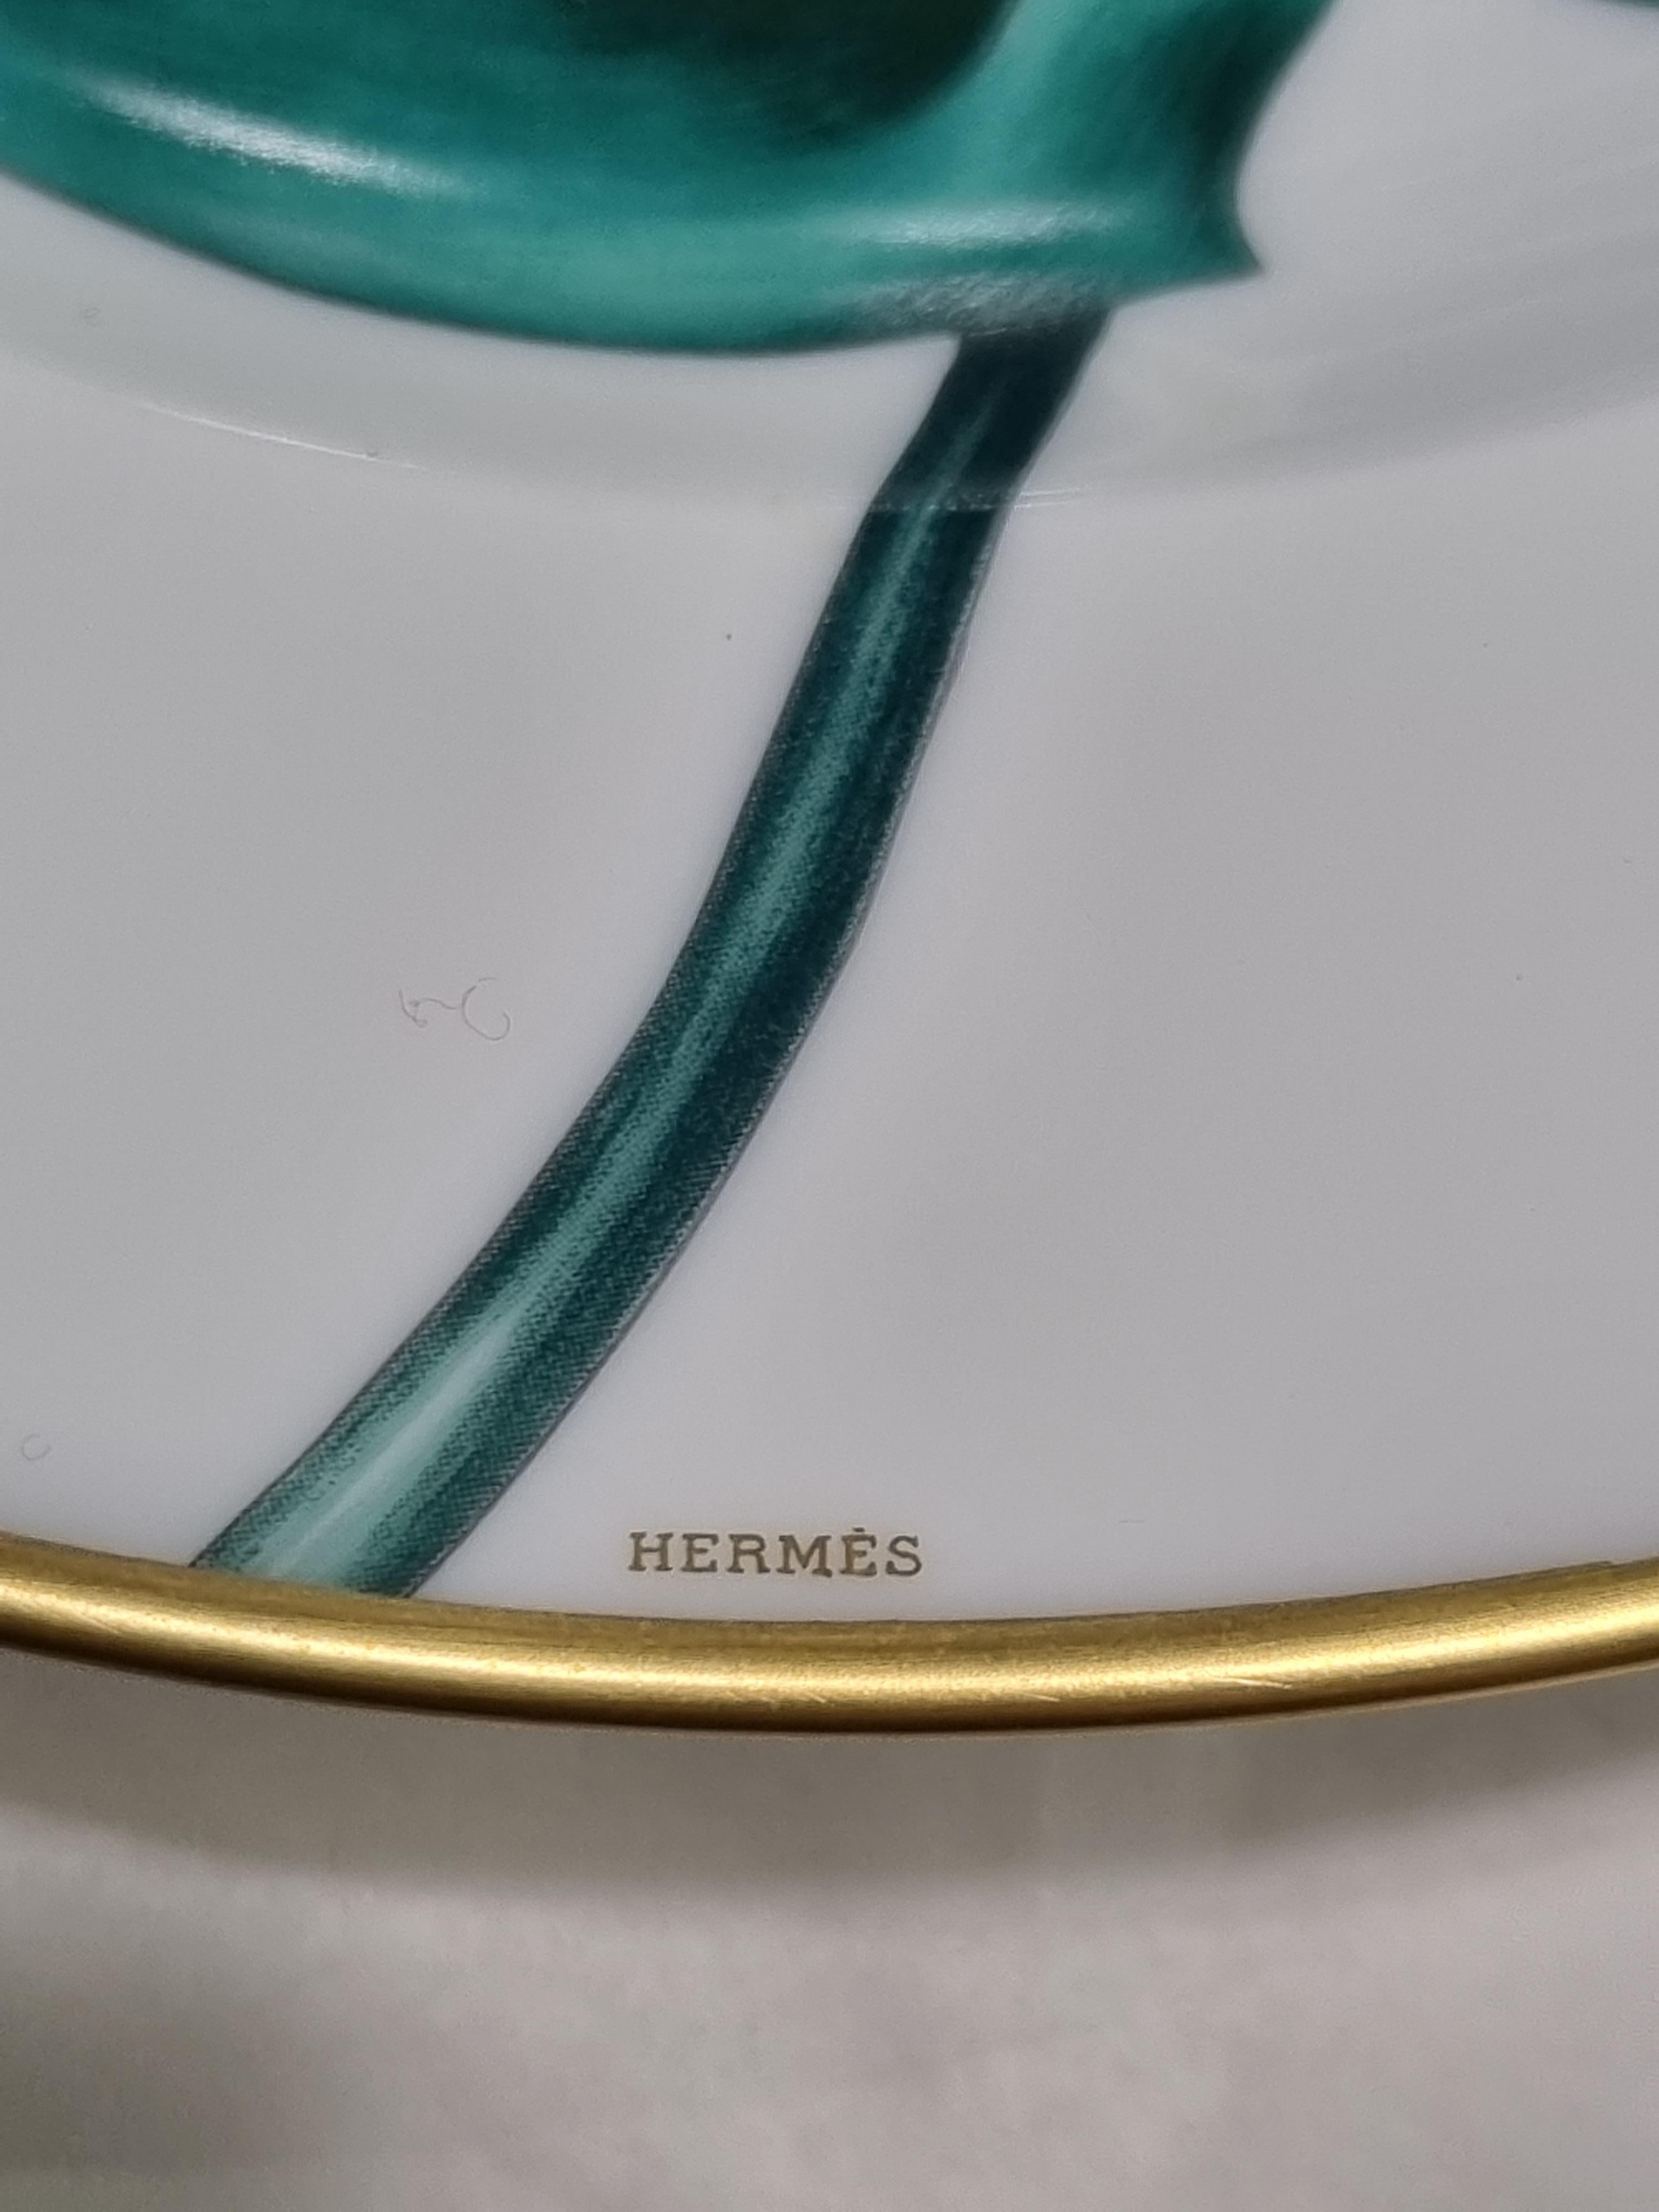 hermes dinnerware sets